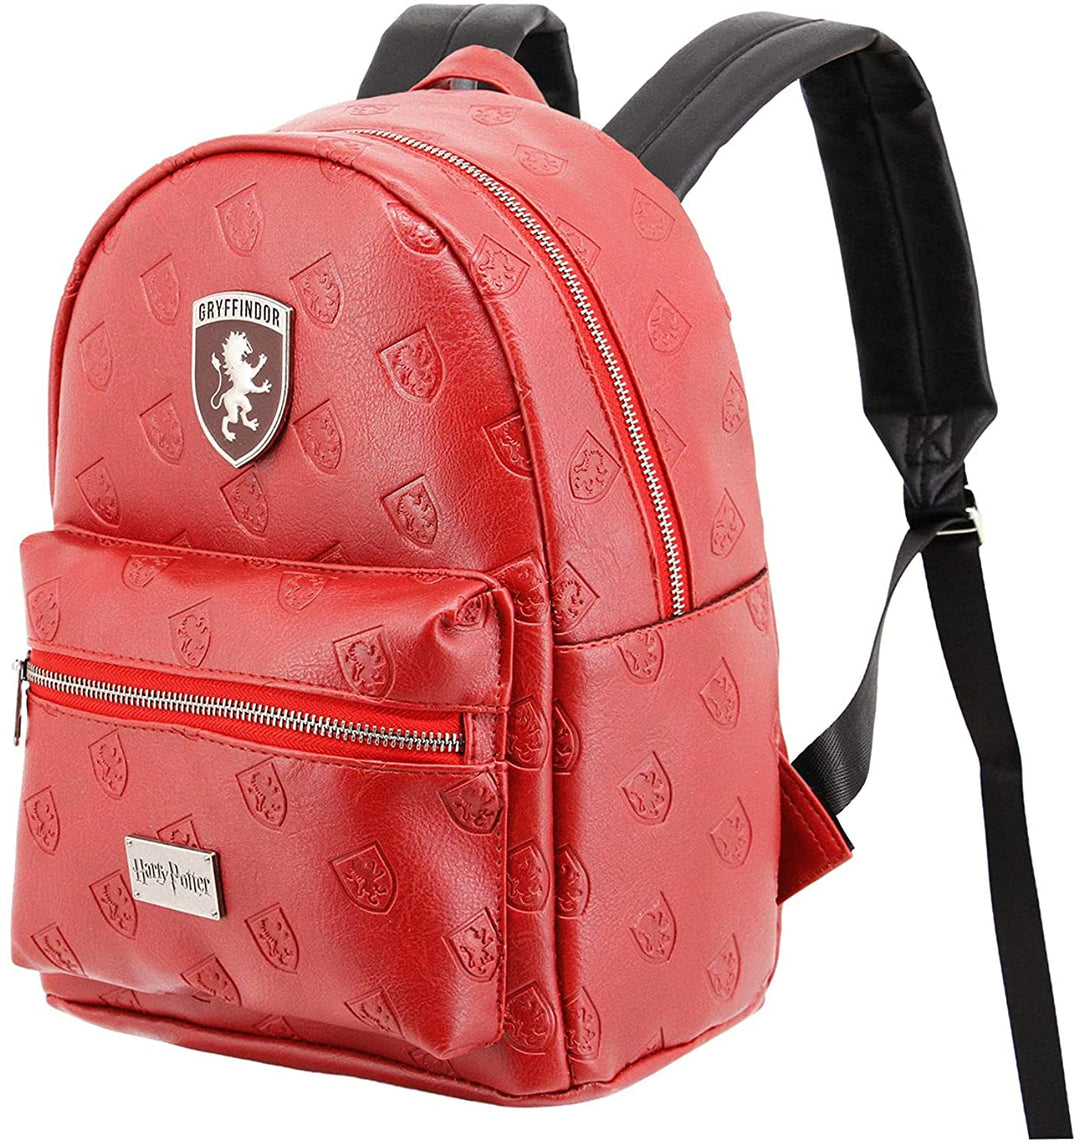 Harry Potter Emblem-Fashion Backpack, Burgundy